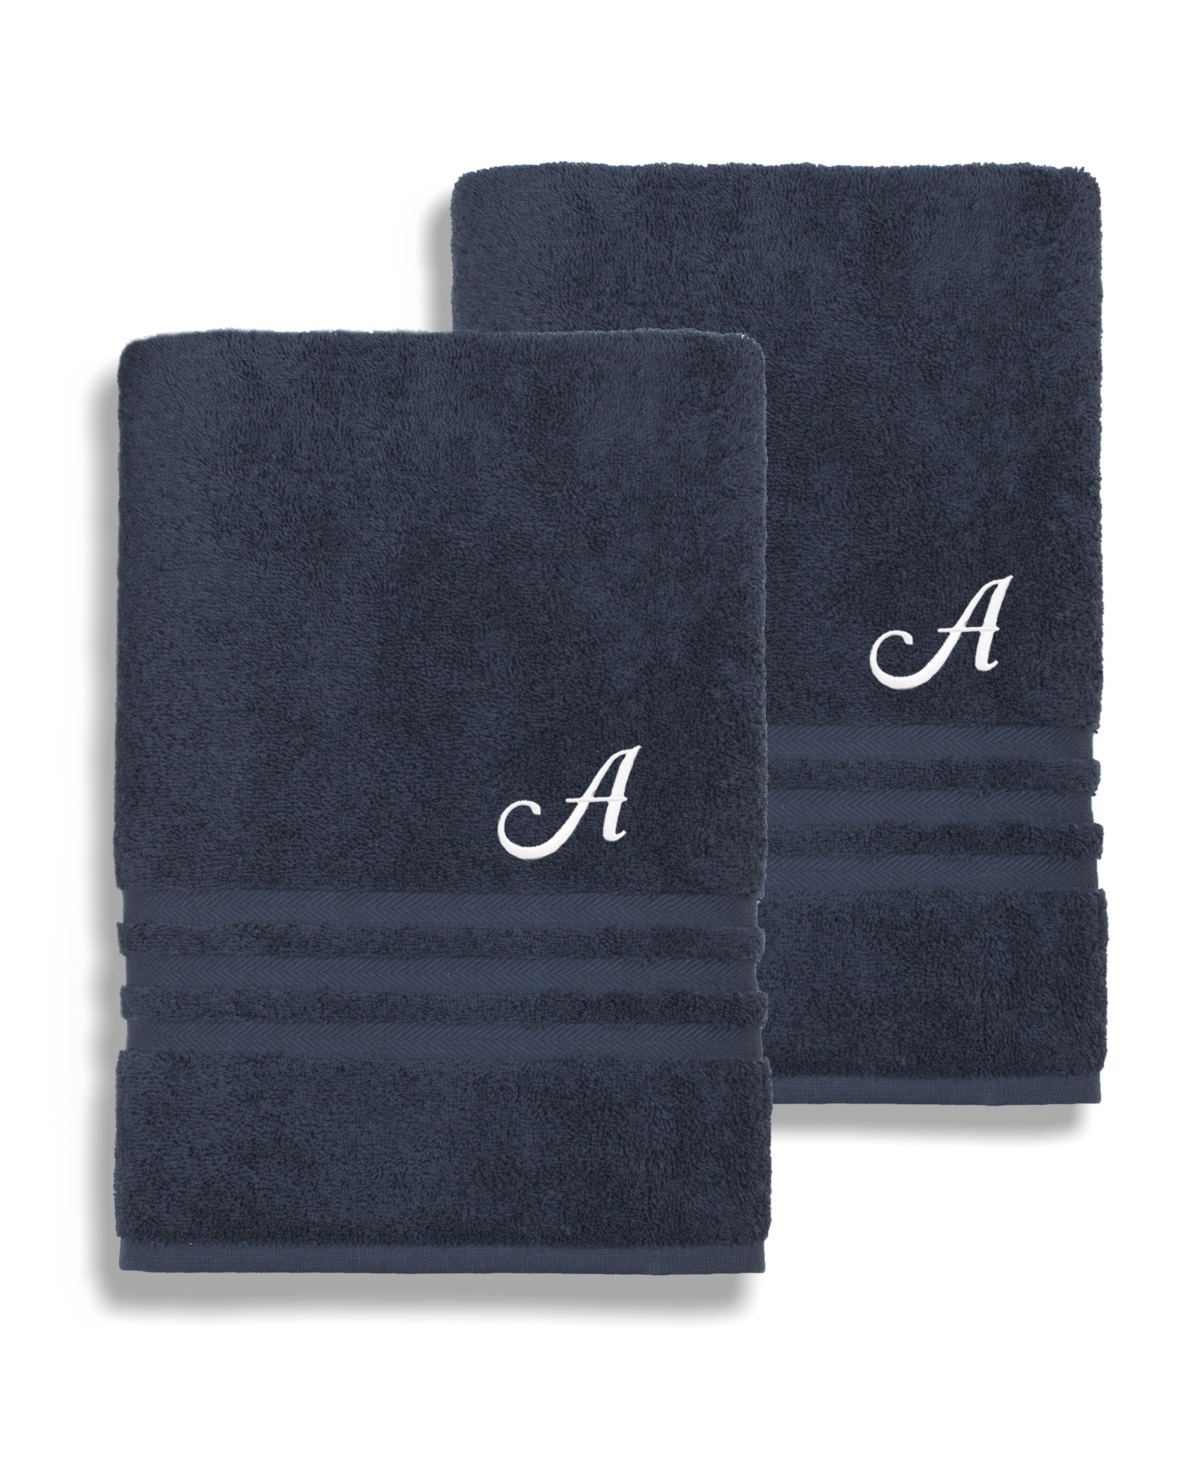 Linum Home Textiles Turkish Cotton Personalized 2 Piece Denzi Bath Towel Set, 54 x 27 Bedding